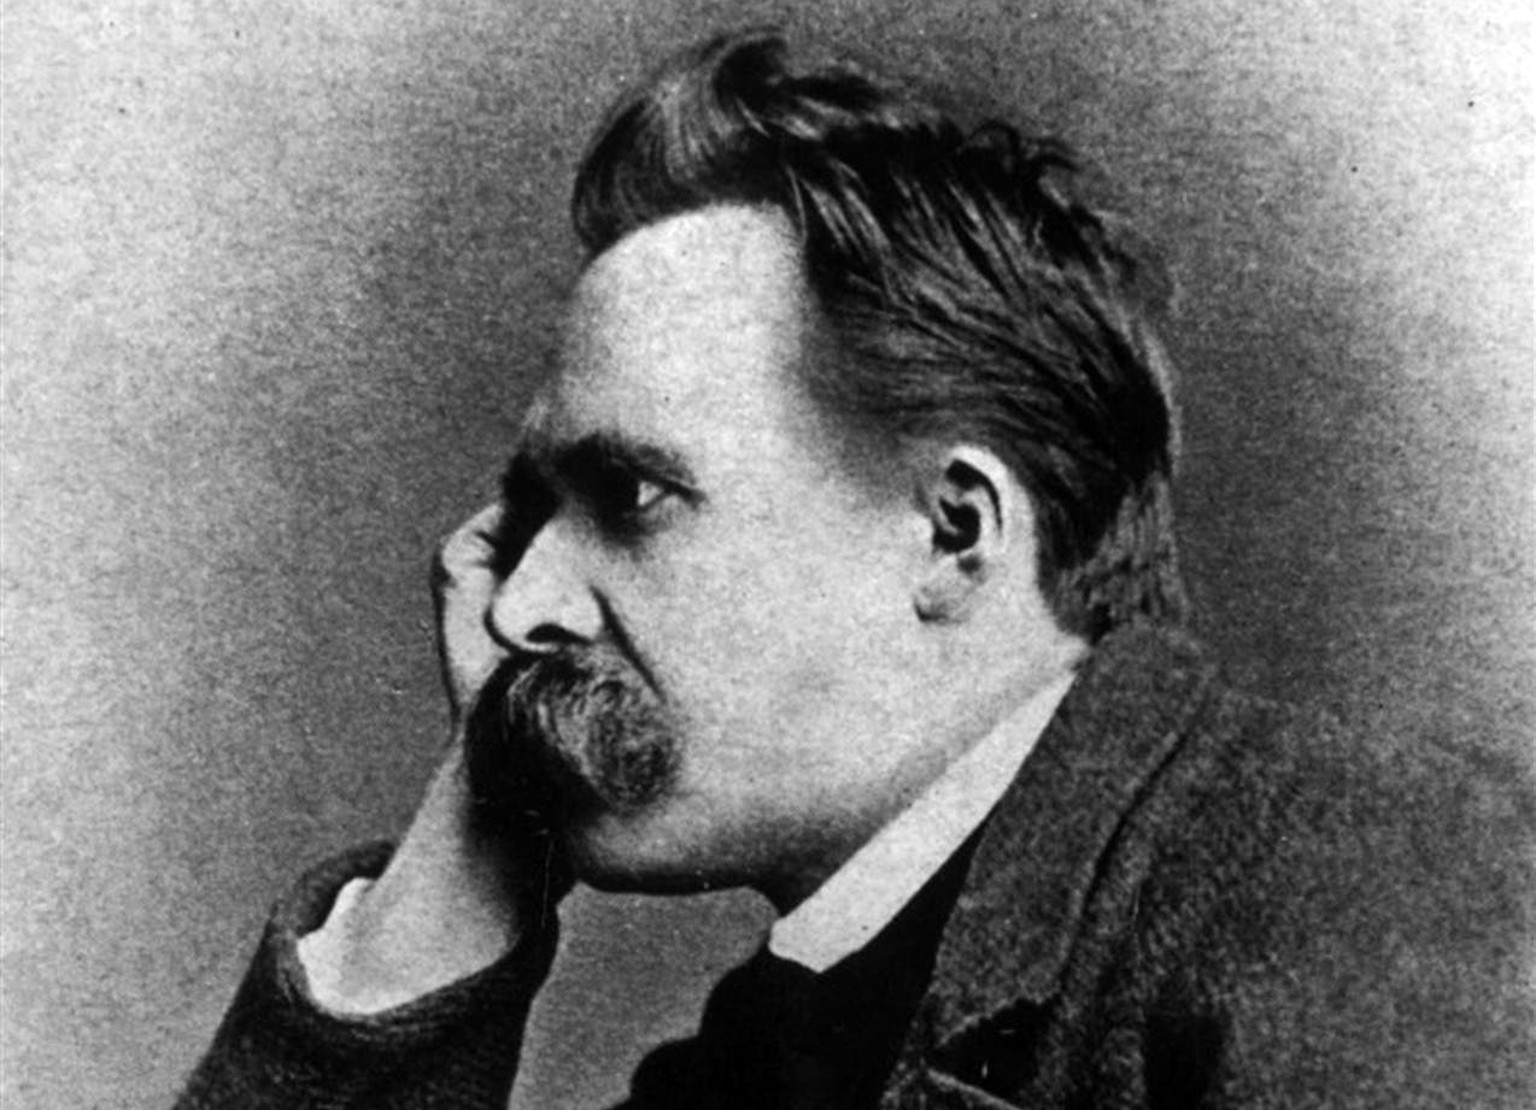 Für Nietzsche ist der Nihilismus das Ergebnis der Überzeugung, dass es keine absoluten Wahrheiten und Werte gibt. Hieraus ergibt sich ein «Glauben an die absolute Wertlosigkeit, das heisst Sinnlosigke ...